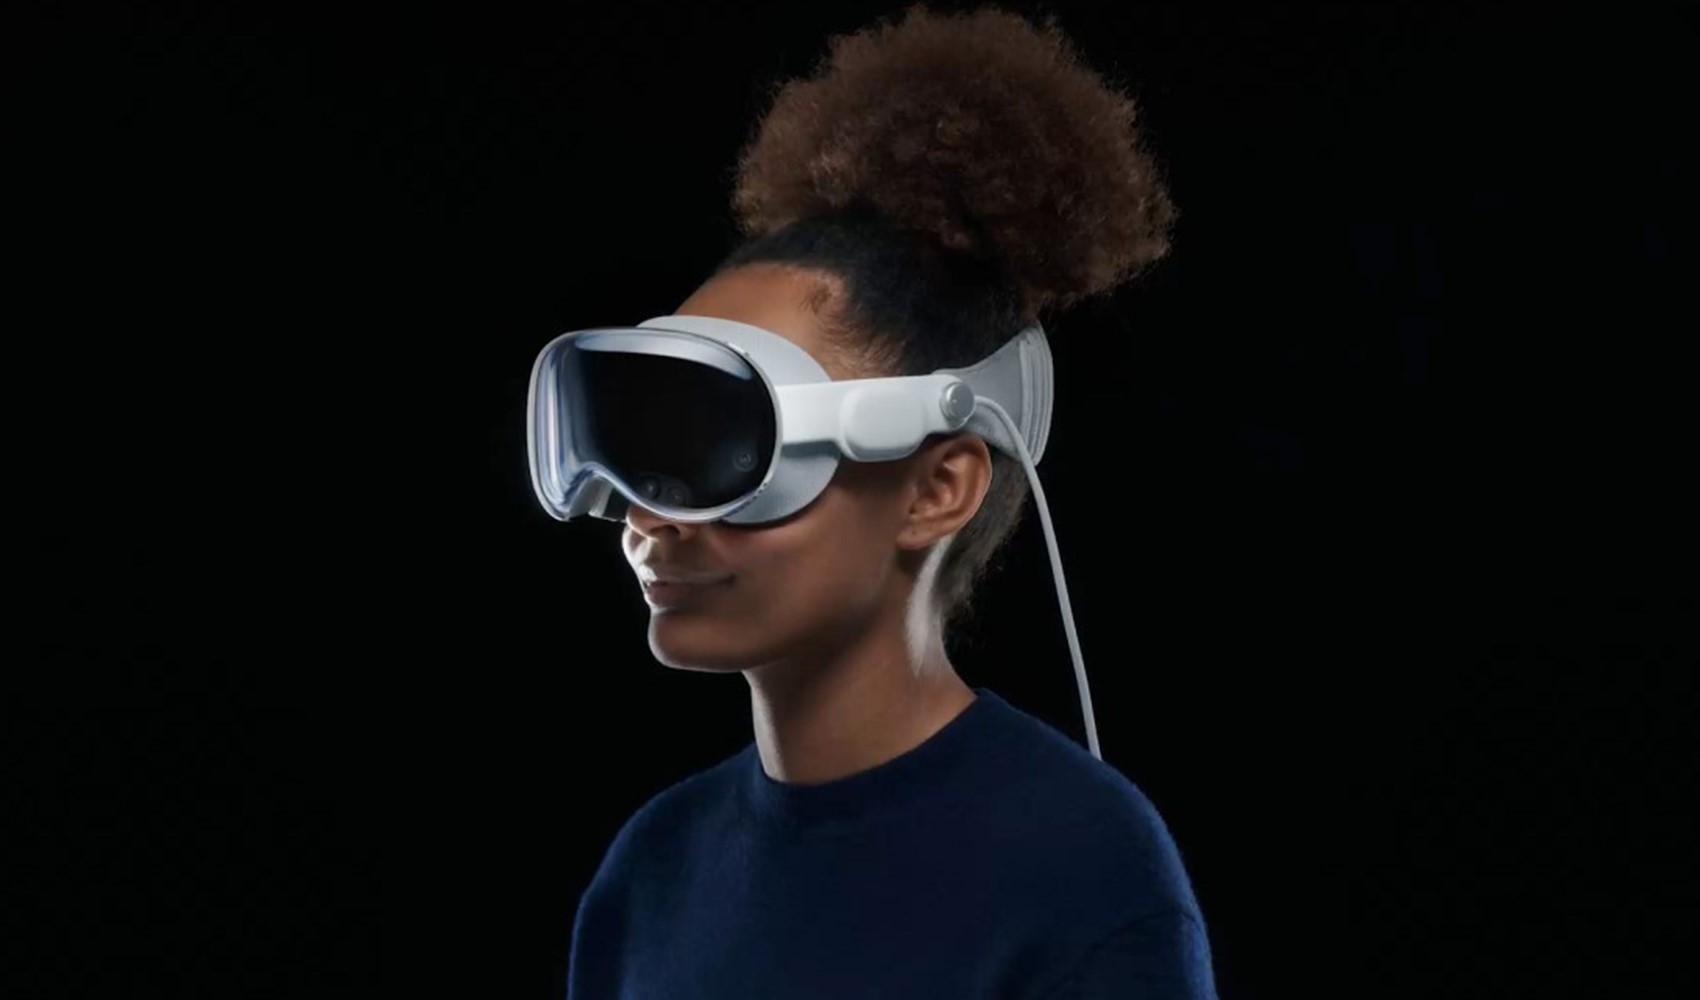 Apple'dan daha uygun fiyatlı VR başlığı geliyor!